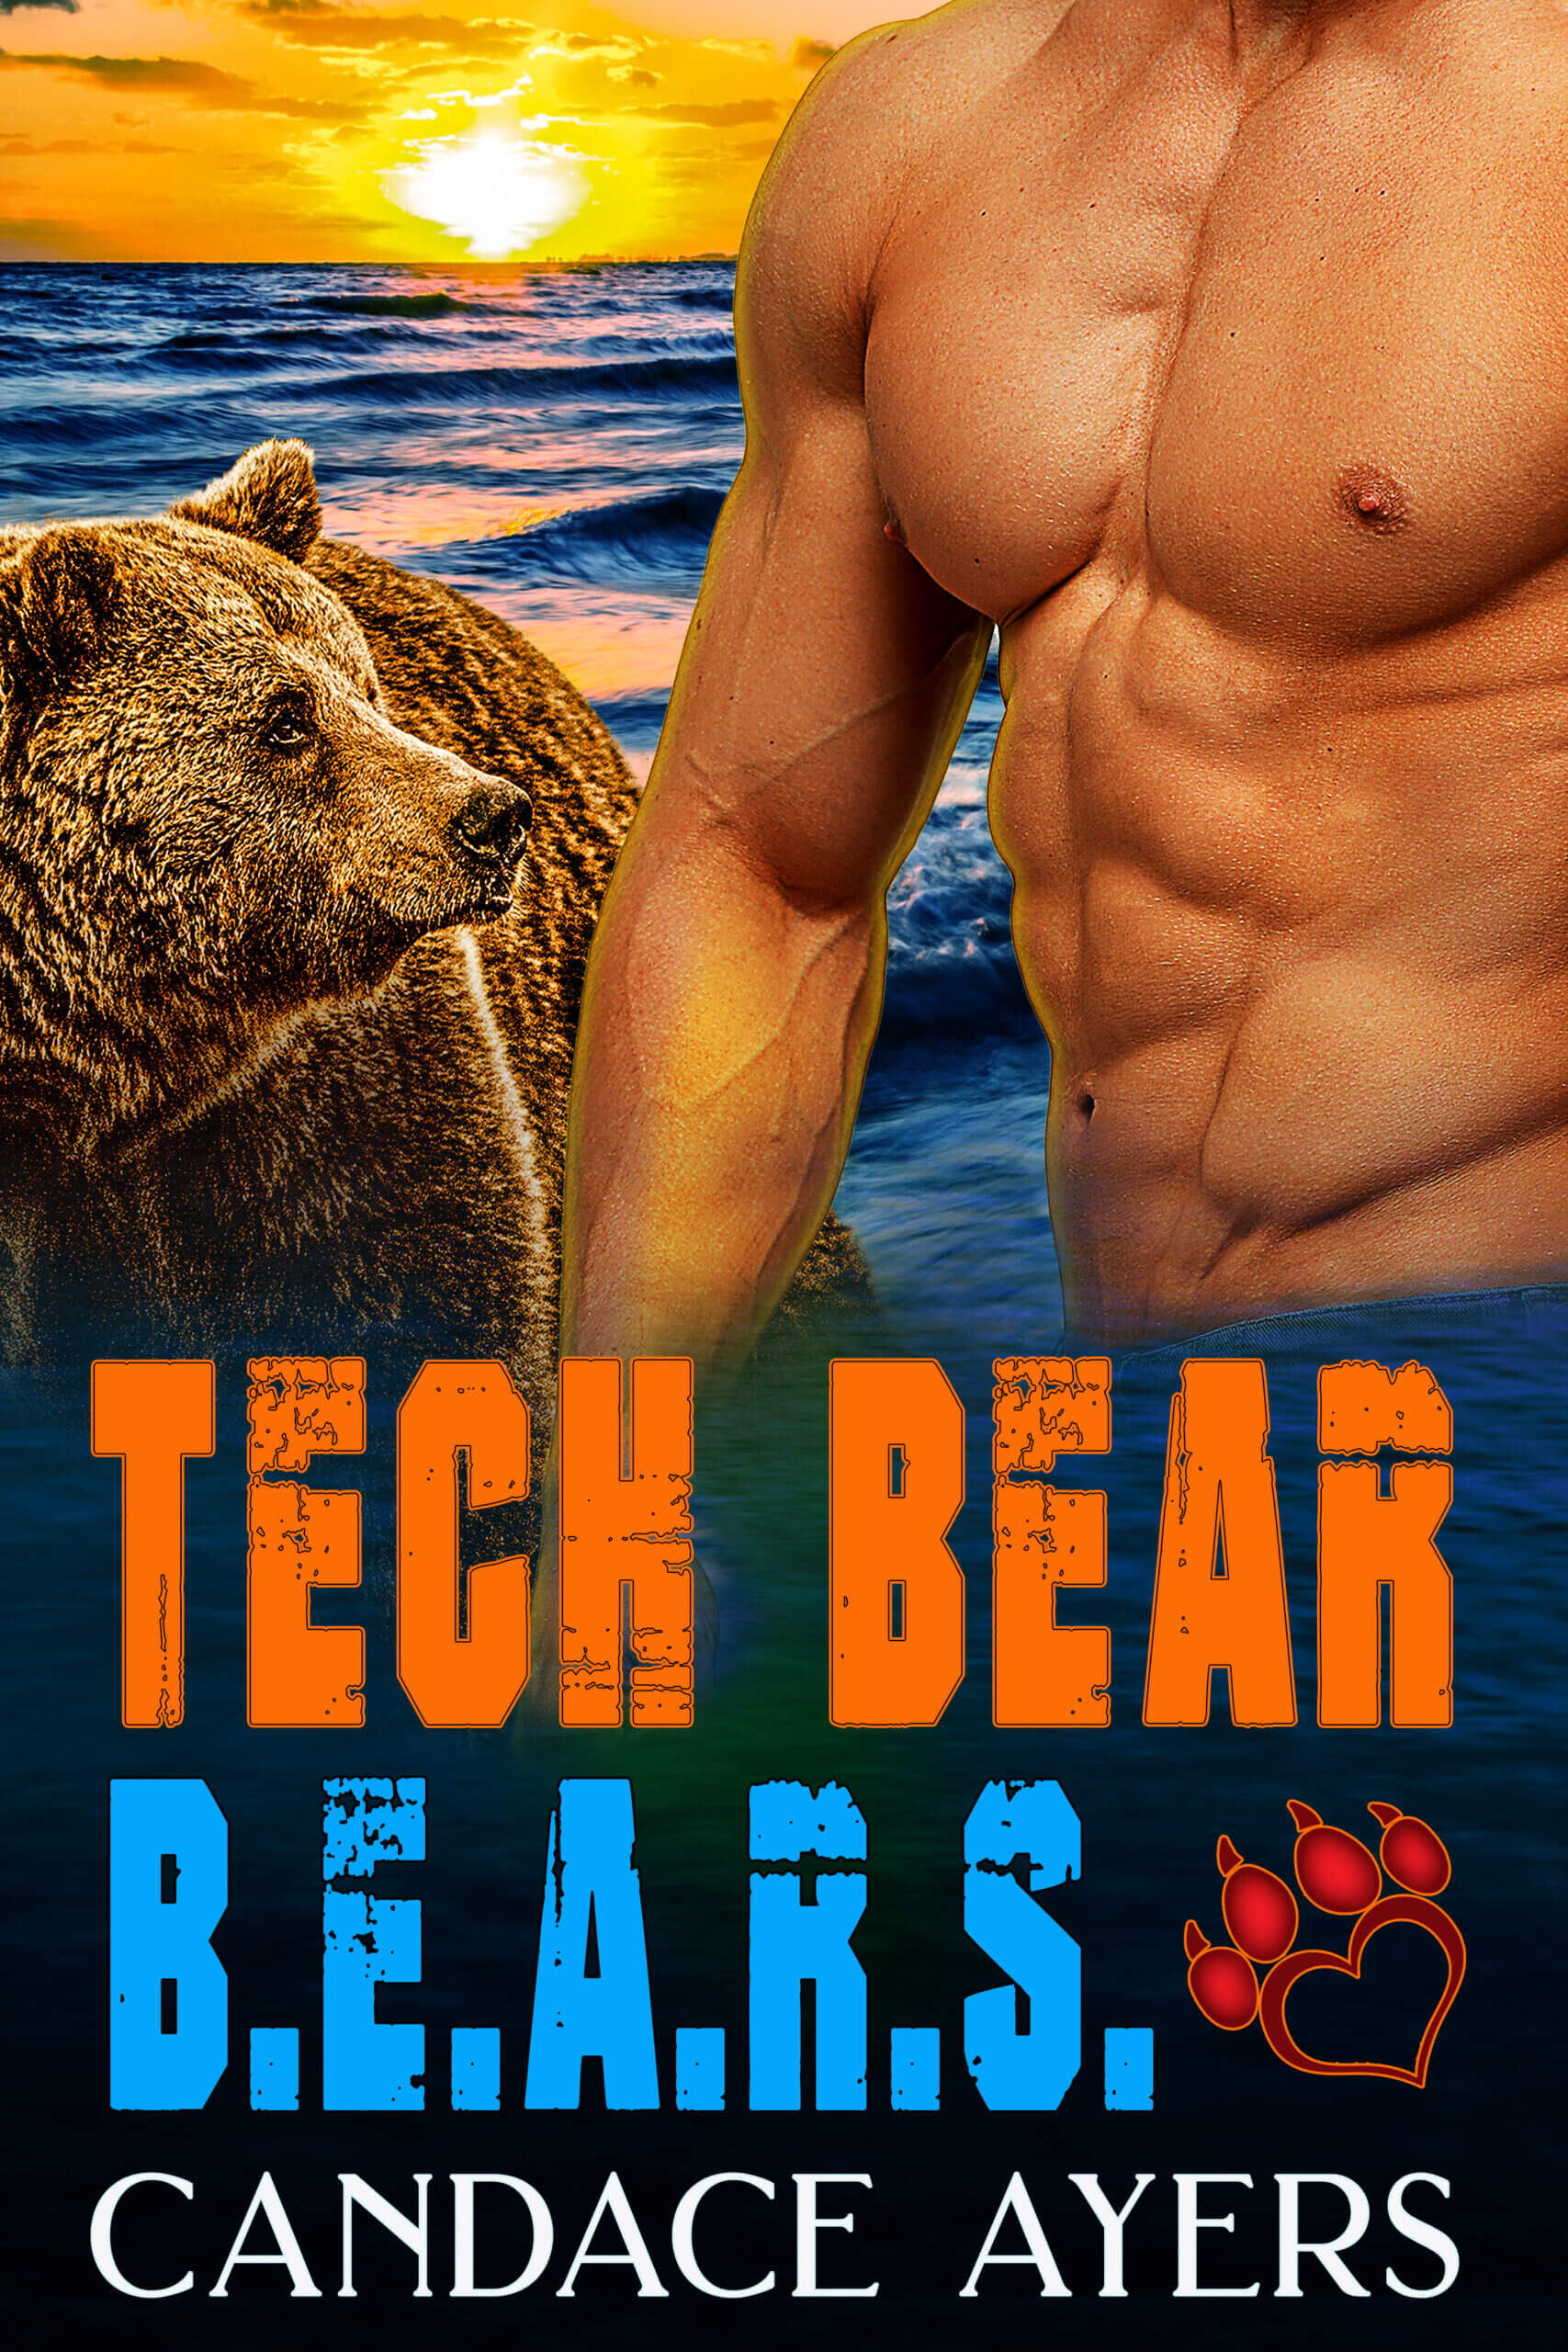 Tech Bear Candace Ayers